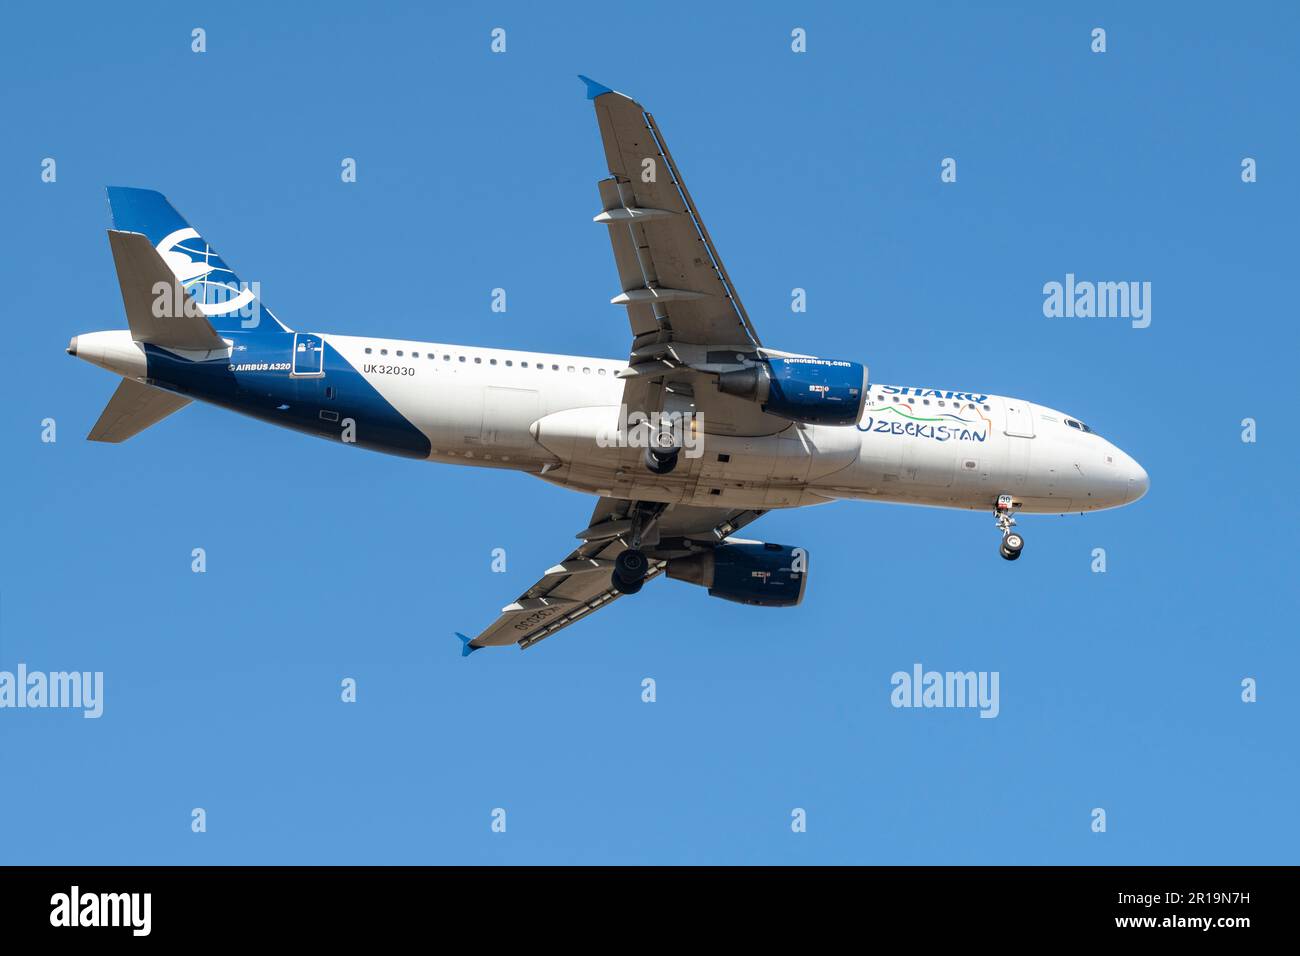 SANKT PETERSBURG, RUSSLAND - 14. APRIL 2023: Airbus A320-214 (UK32030) der Qanot Sharq Airline auf Gleitpfad in blauem wolkenlosem Himmel Stockfoto